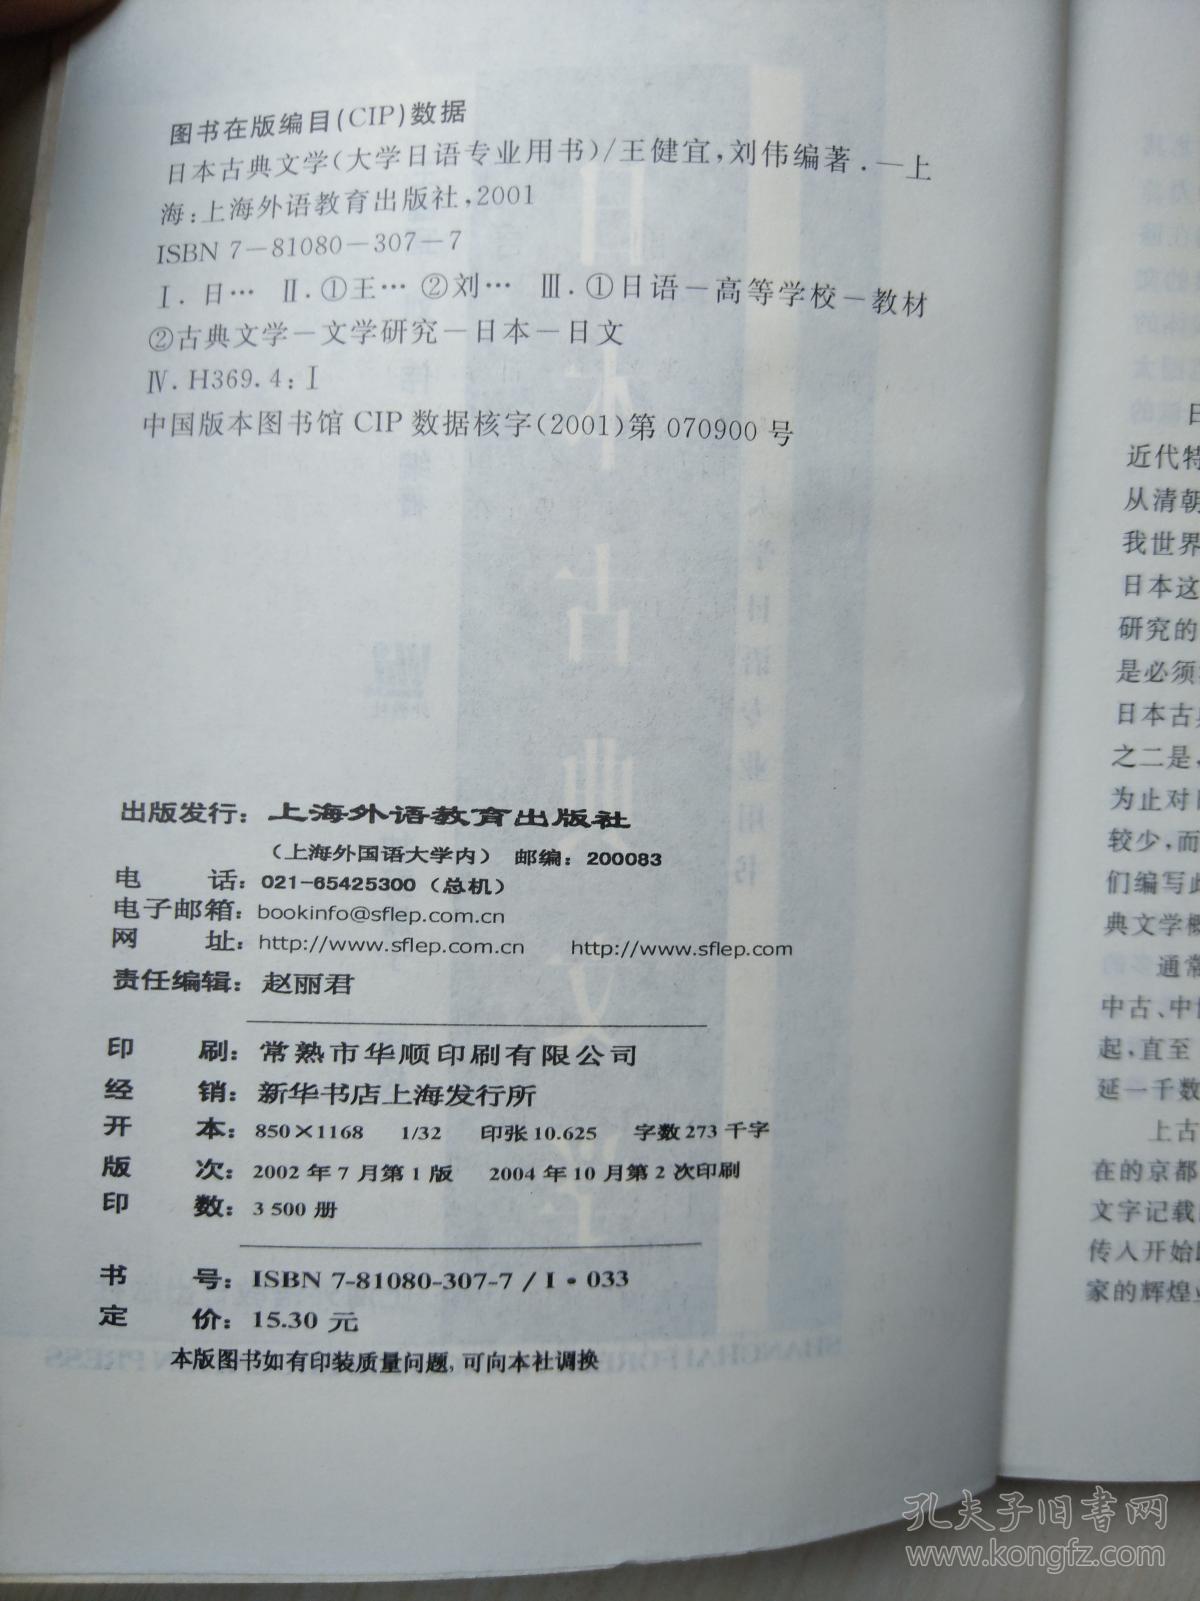 大学日语专业用书：日本古典文学